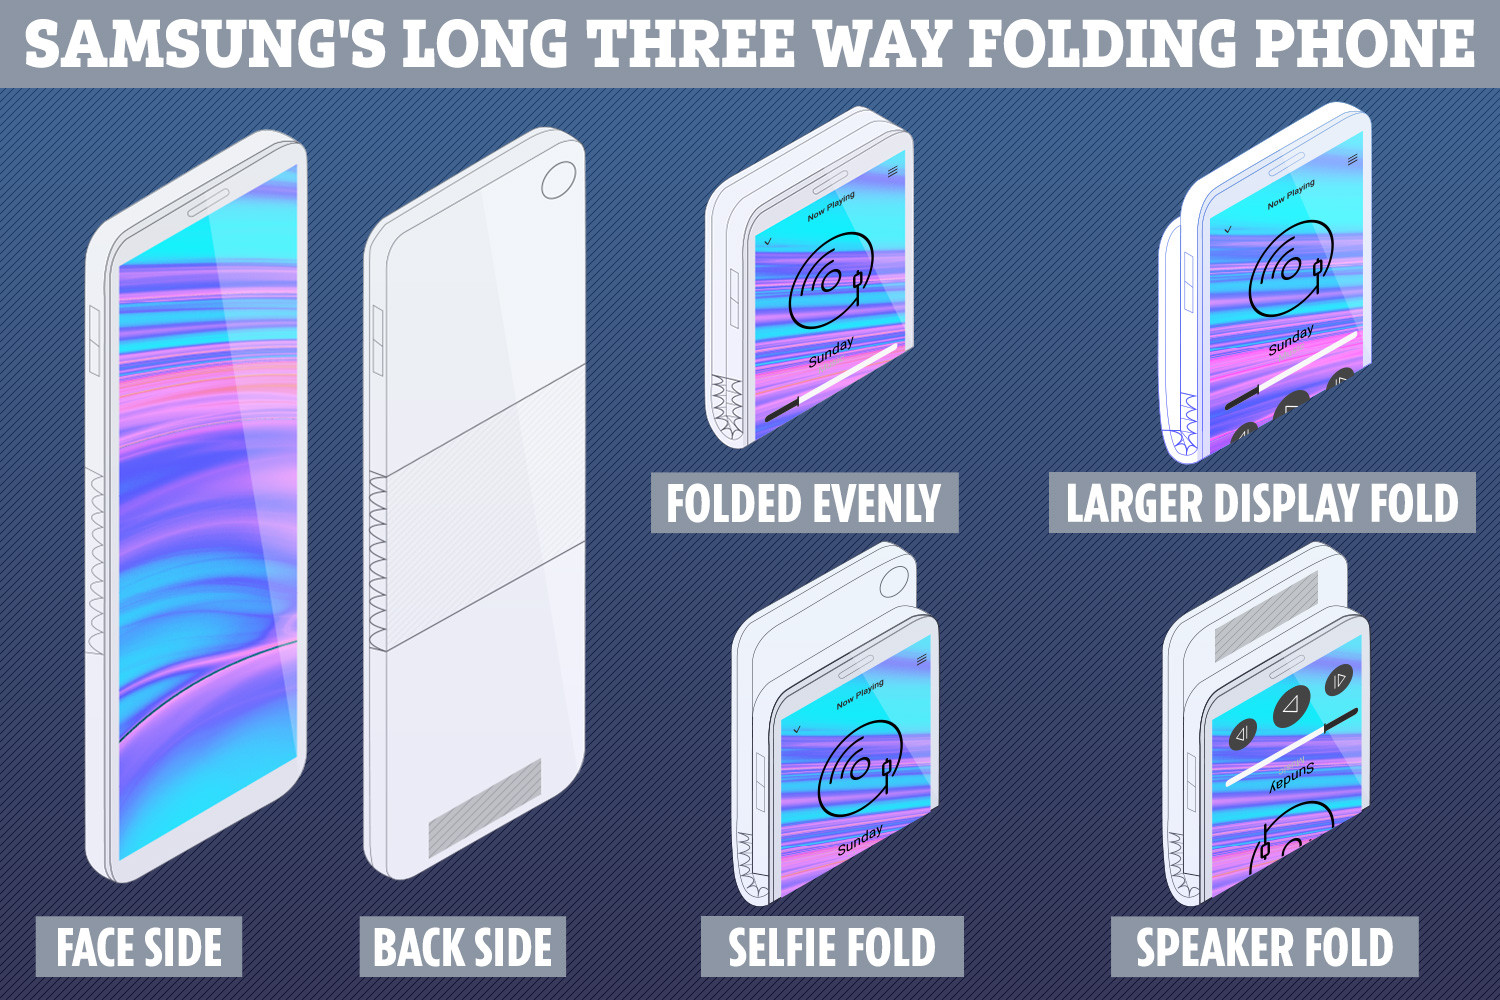 تخترع Samsung منافس iPhone "الطويل والرقيق" الذي يطوى في ثلاثة اتجاهات مختلفة 1